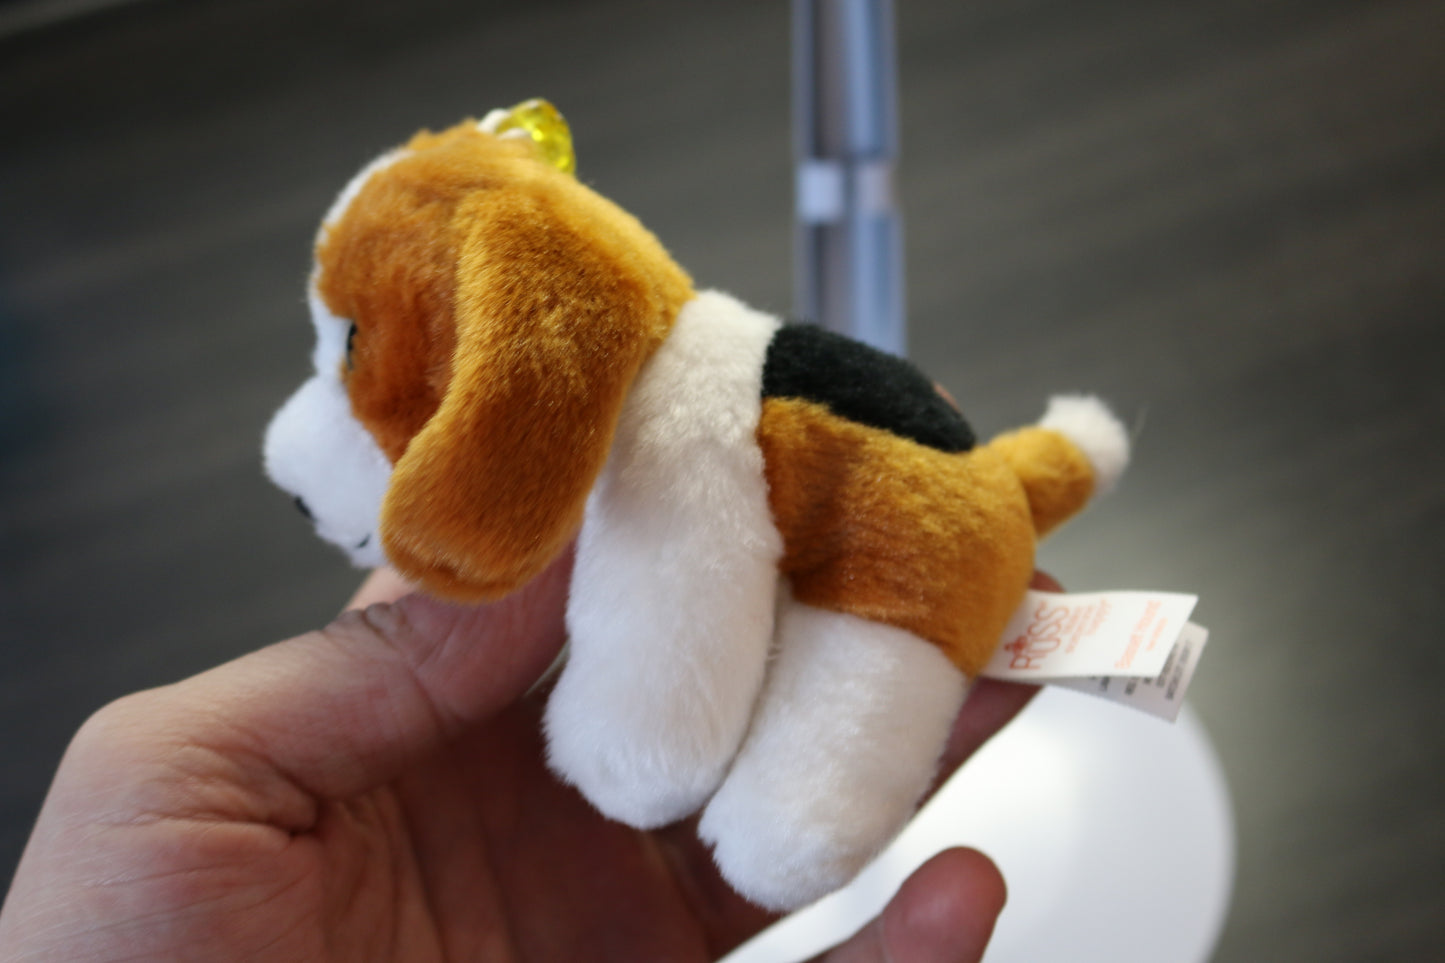 Basset Hound Plush Stuffed Animal Toy By Russ, Sitting. 6"